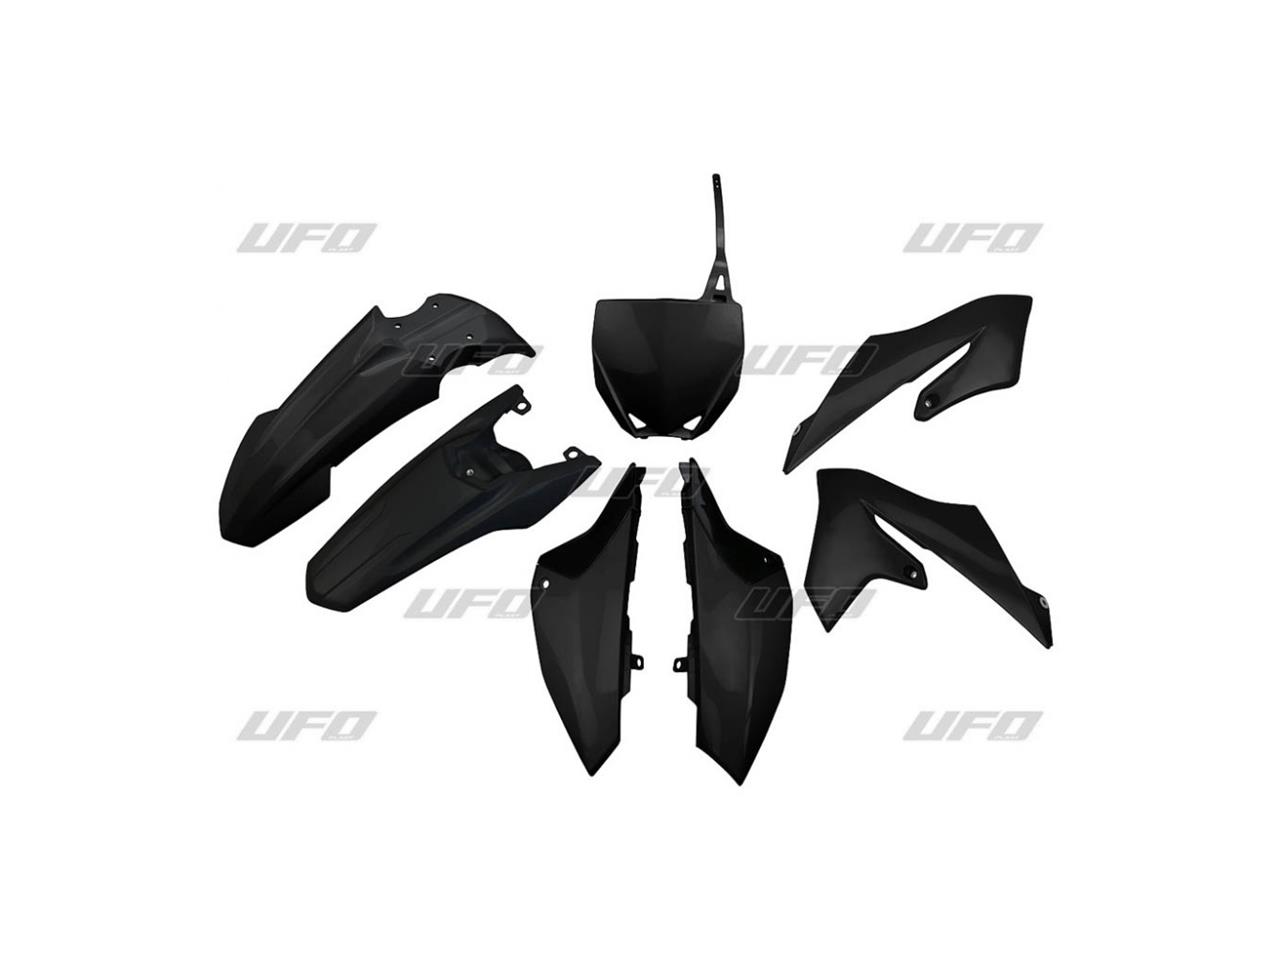 Kit plastiques marque UFO Yamaha YZ 65 noir